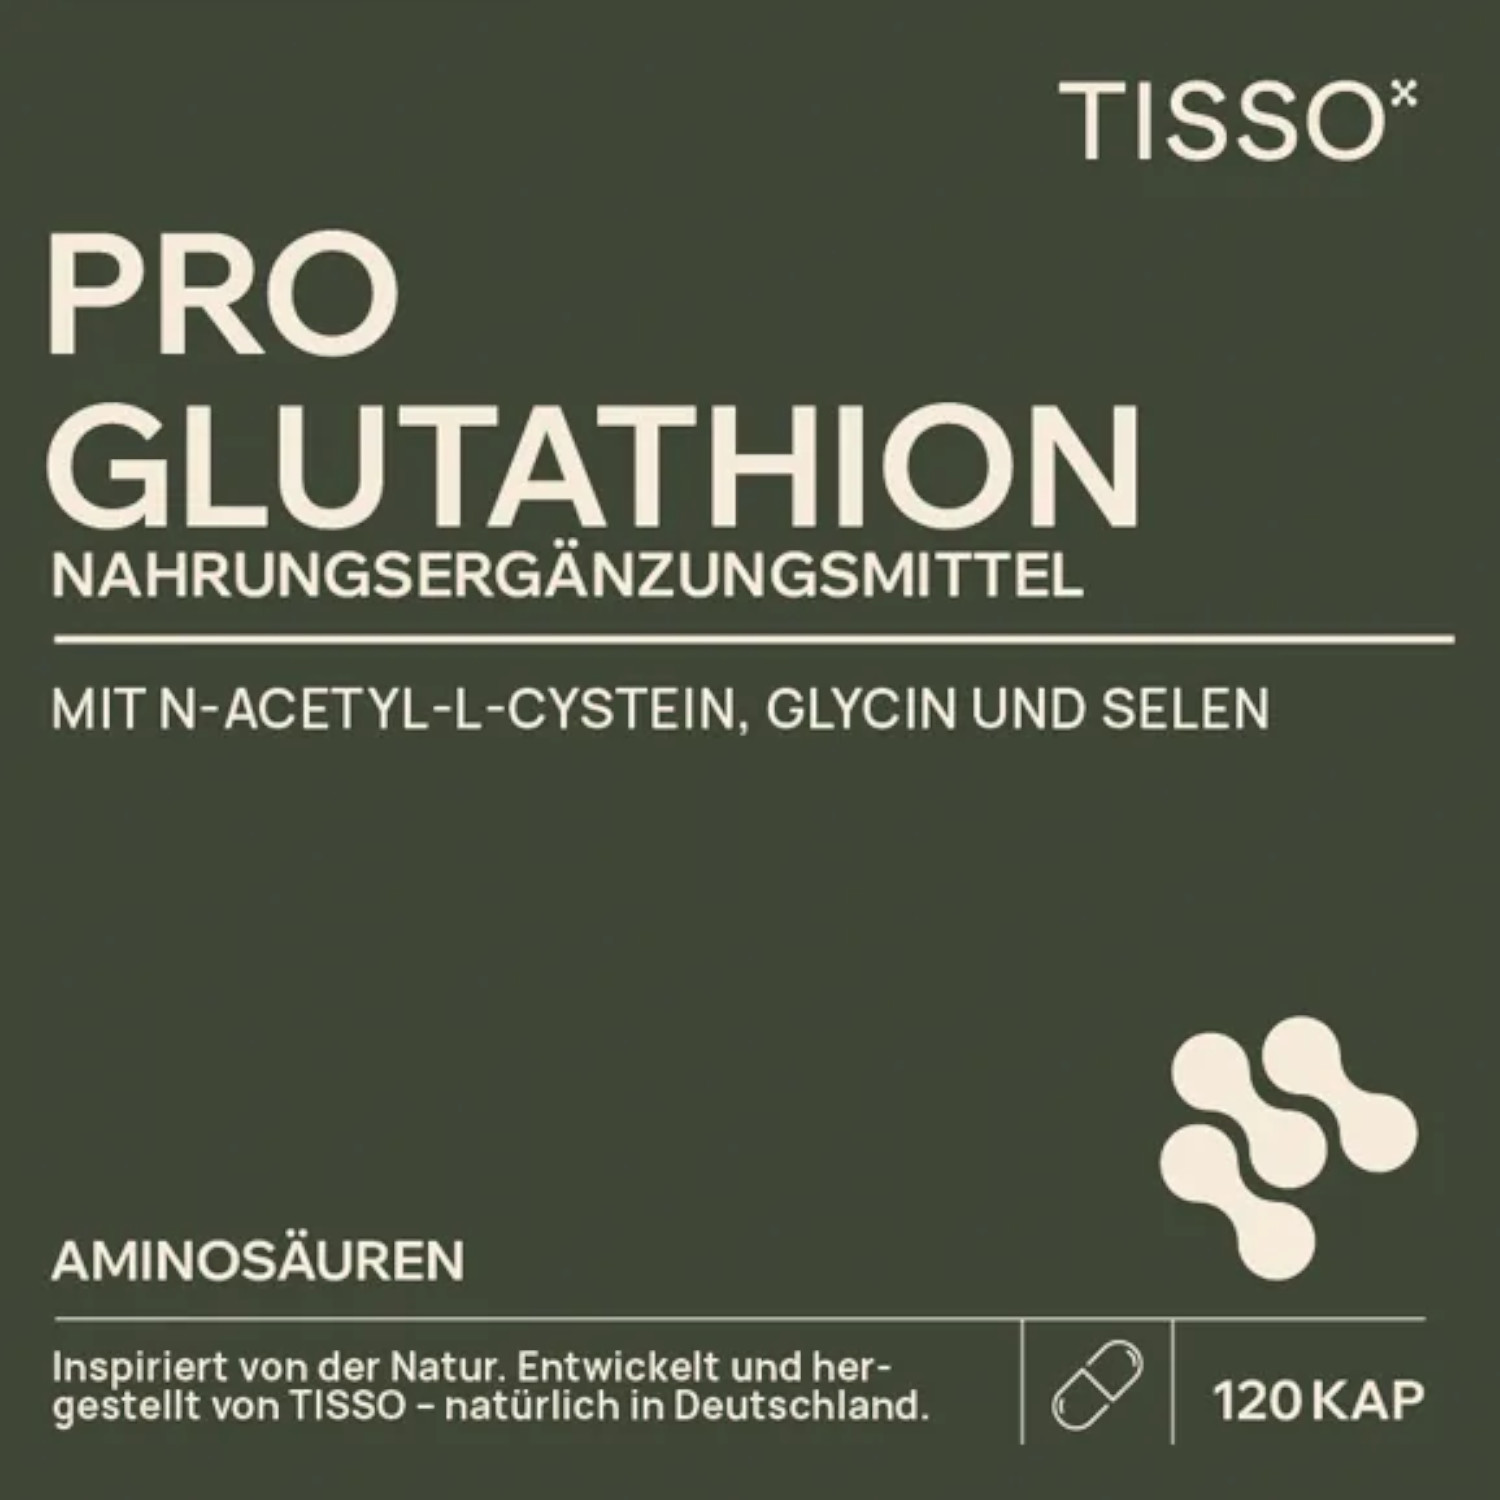 Pro Glutathion von TISSO - Label